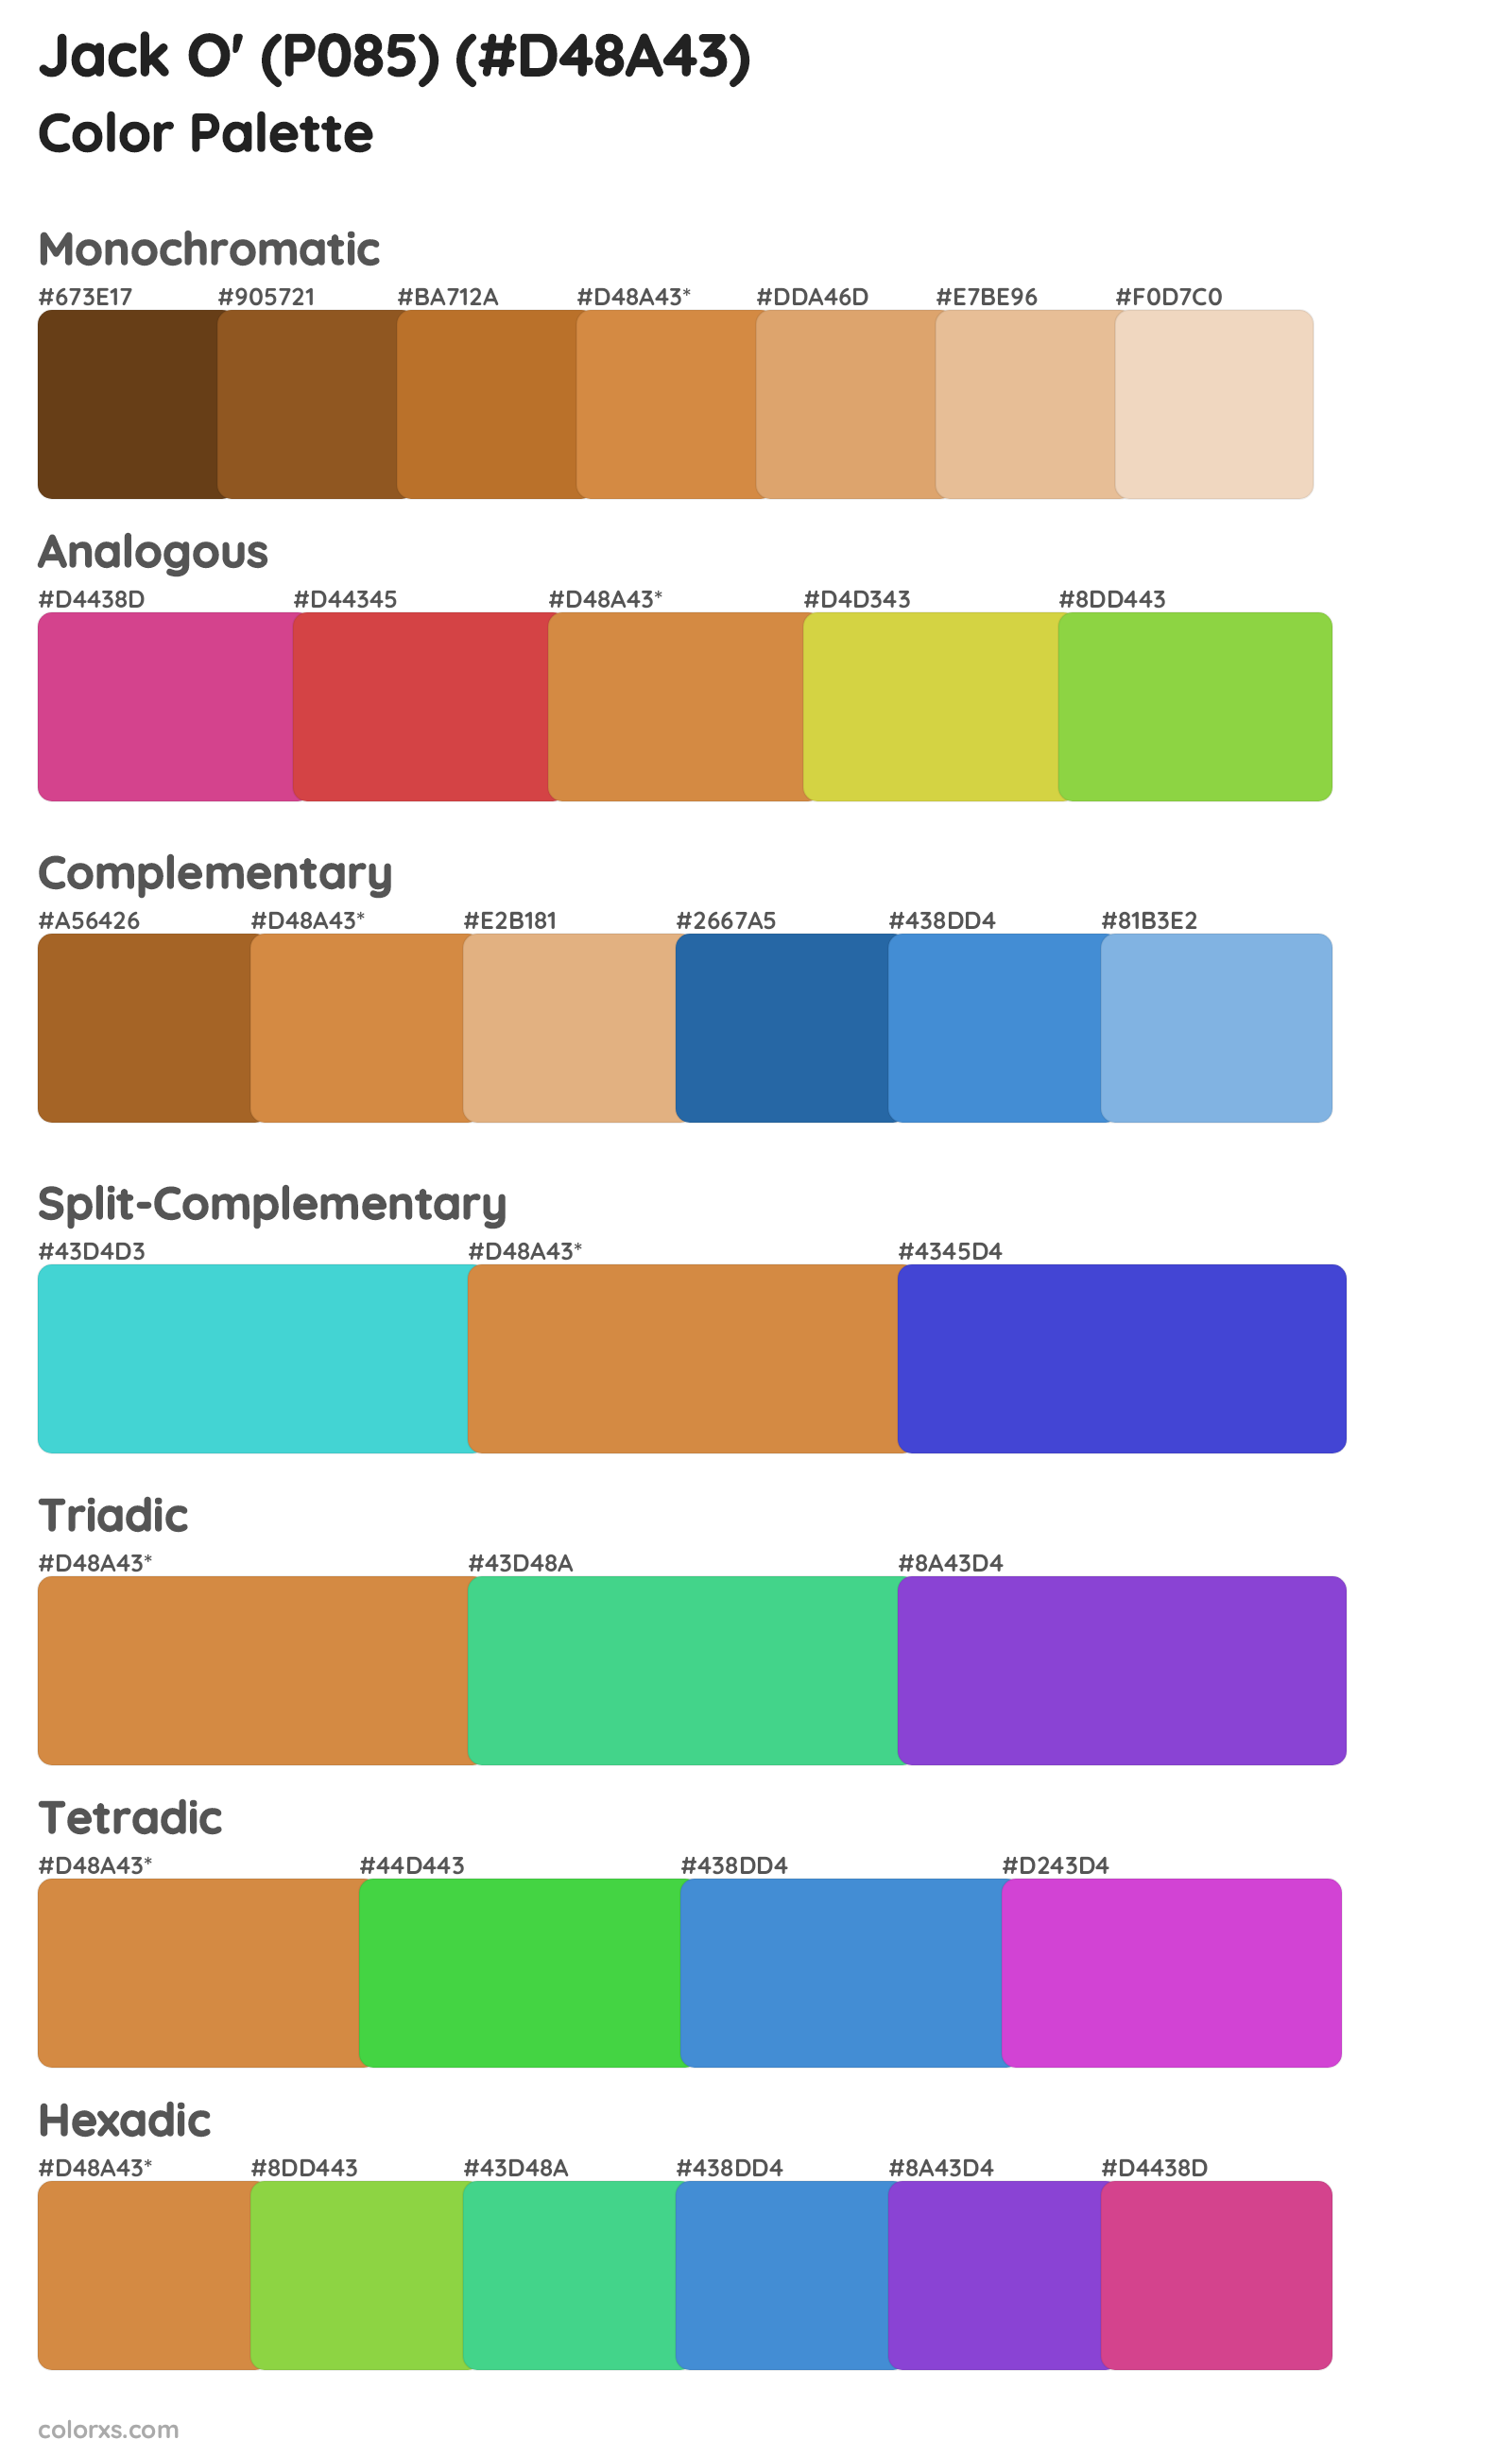 Jack O' (P085) Color Scheme Palettes